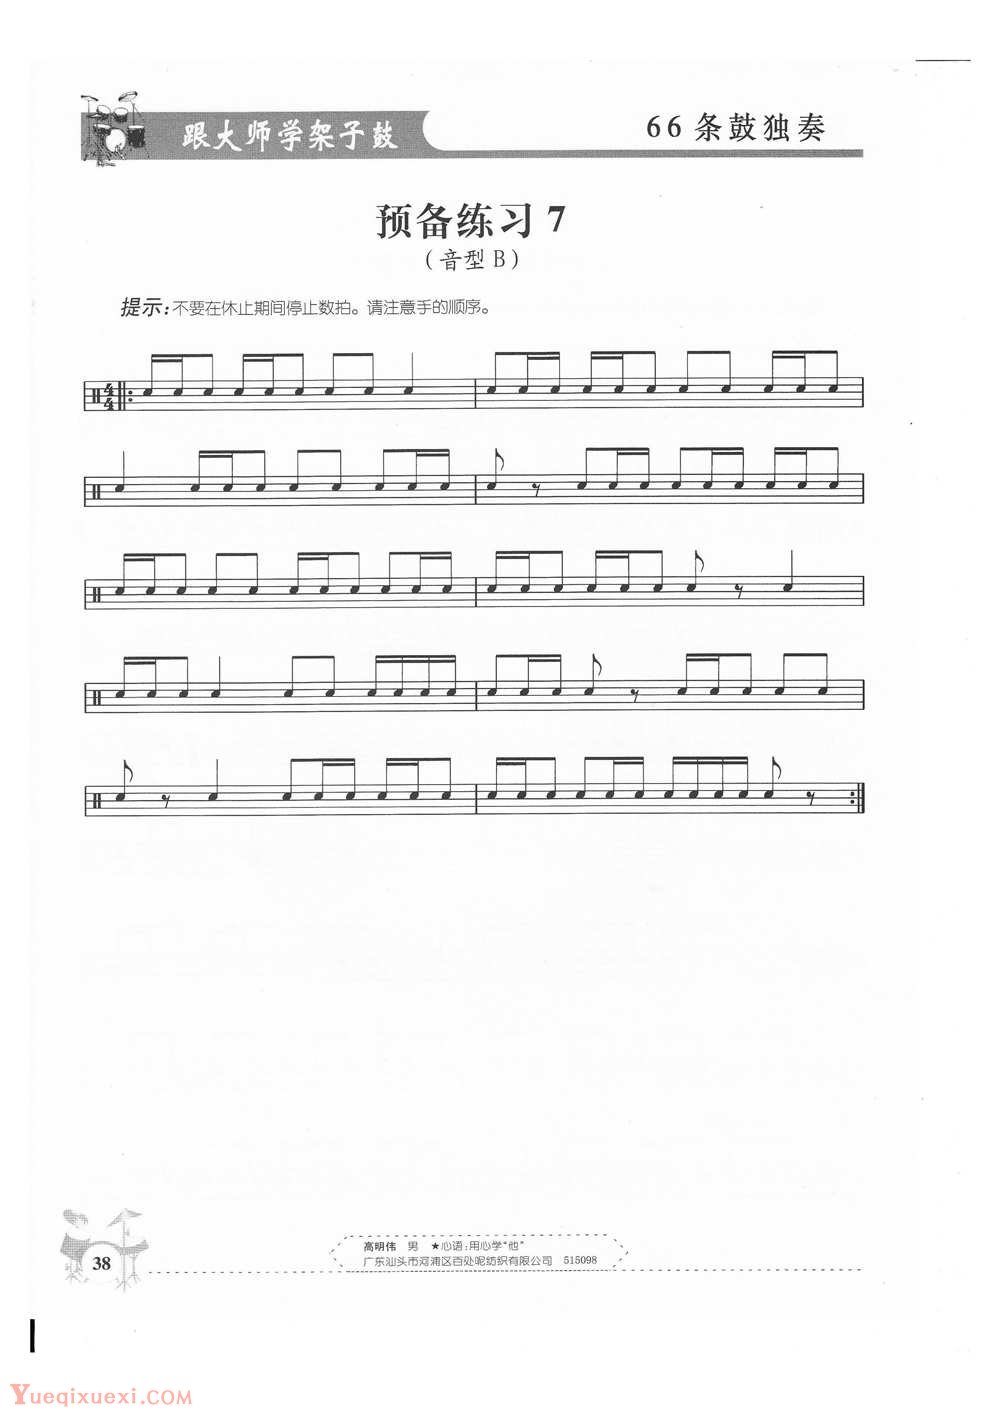 架子鼓基础练习 预备练习7(音型B)(43)